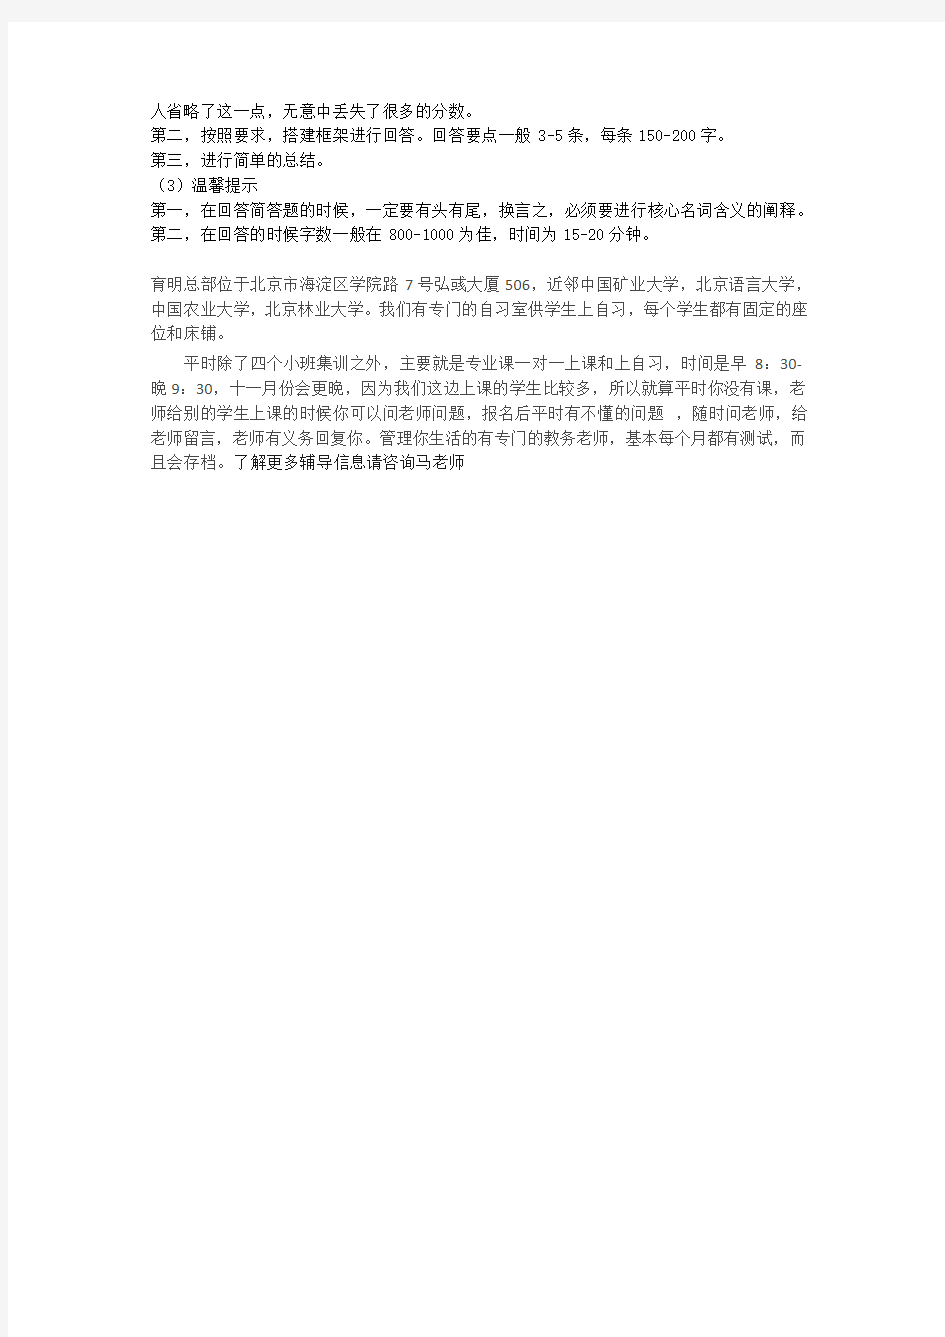 2020年河南师范大学翻译硕士总体要求及考研信息